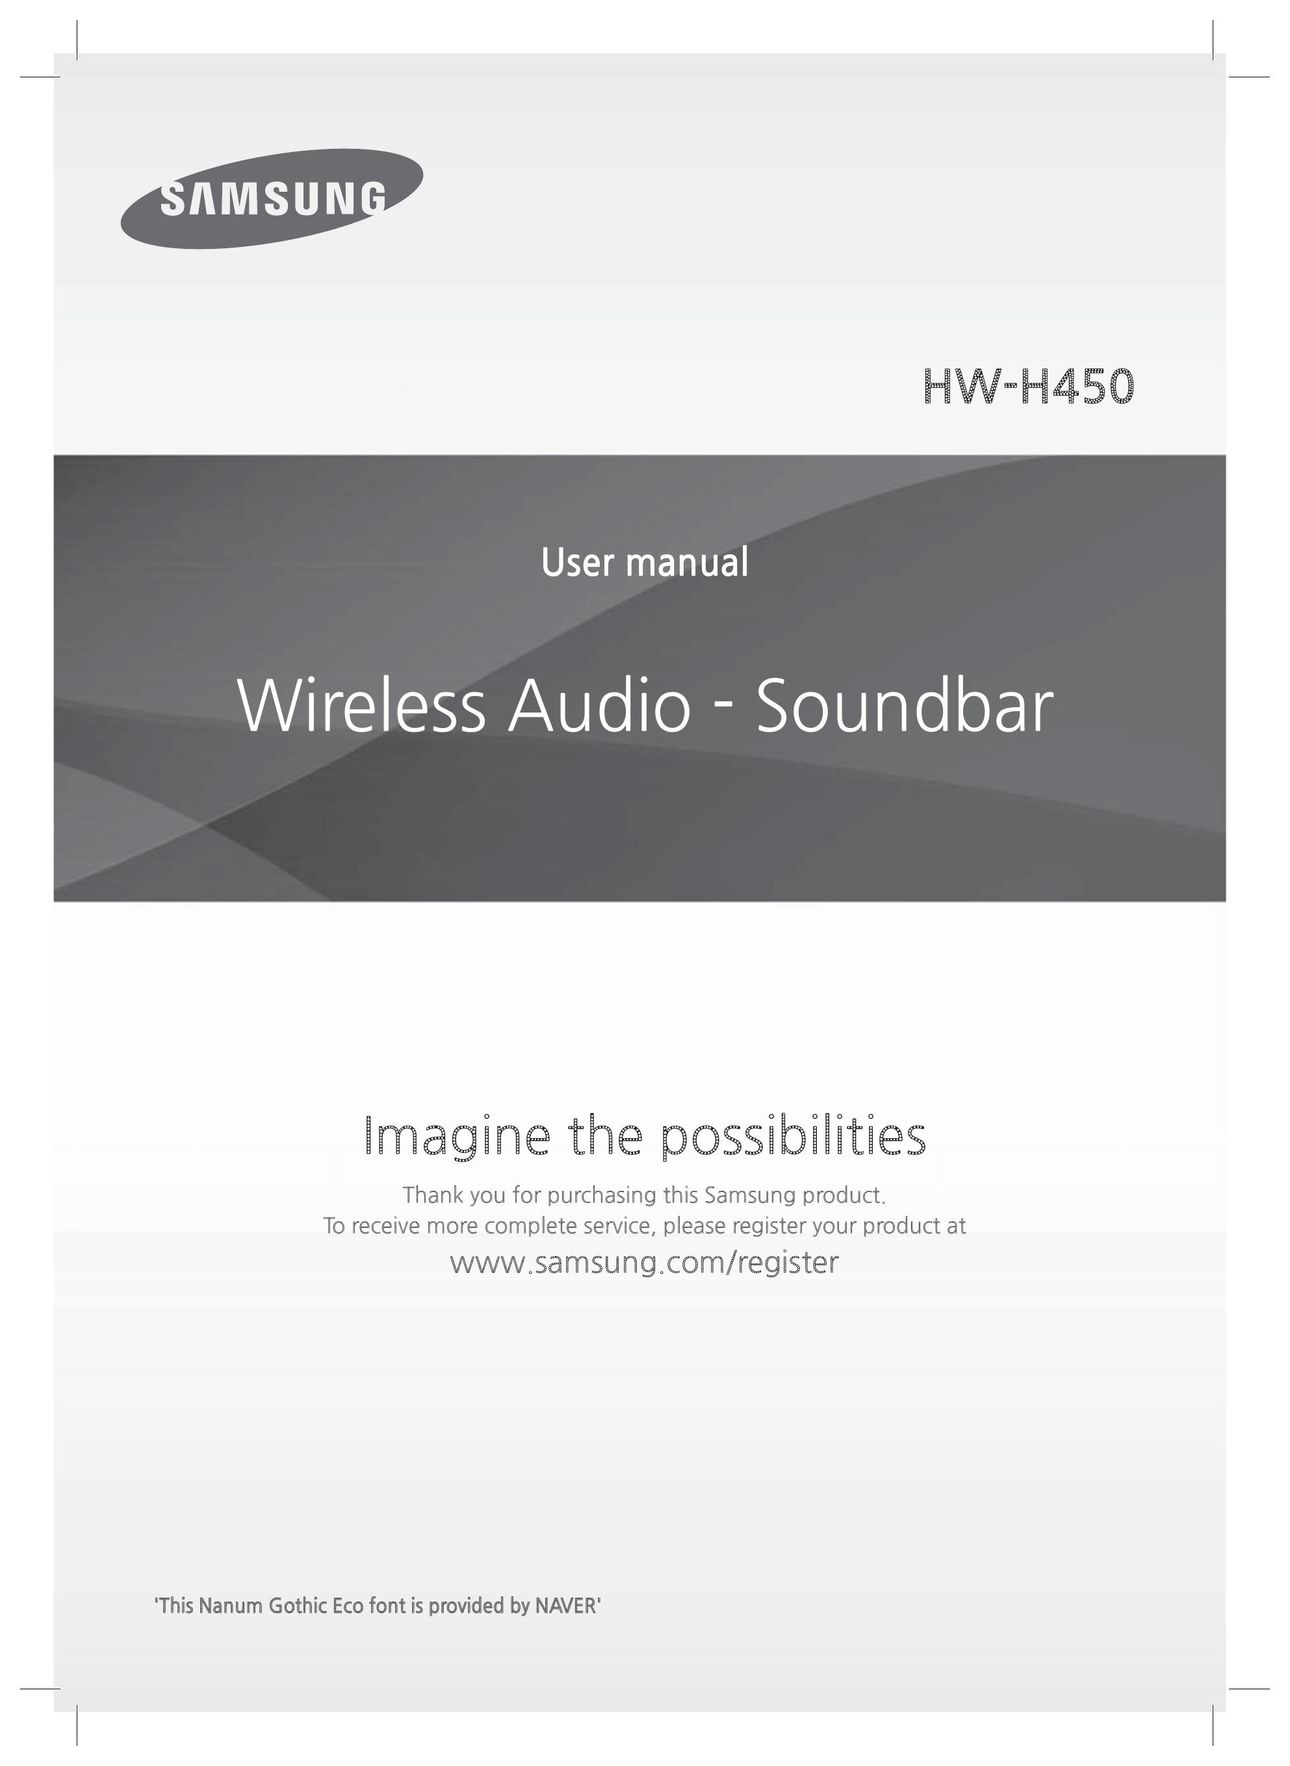 Samsung HW-H450/ZA Speaker System User Manual